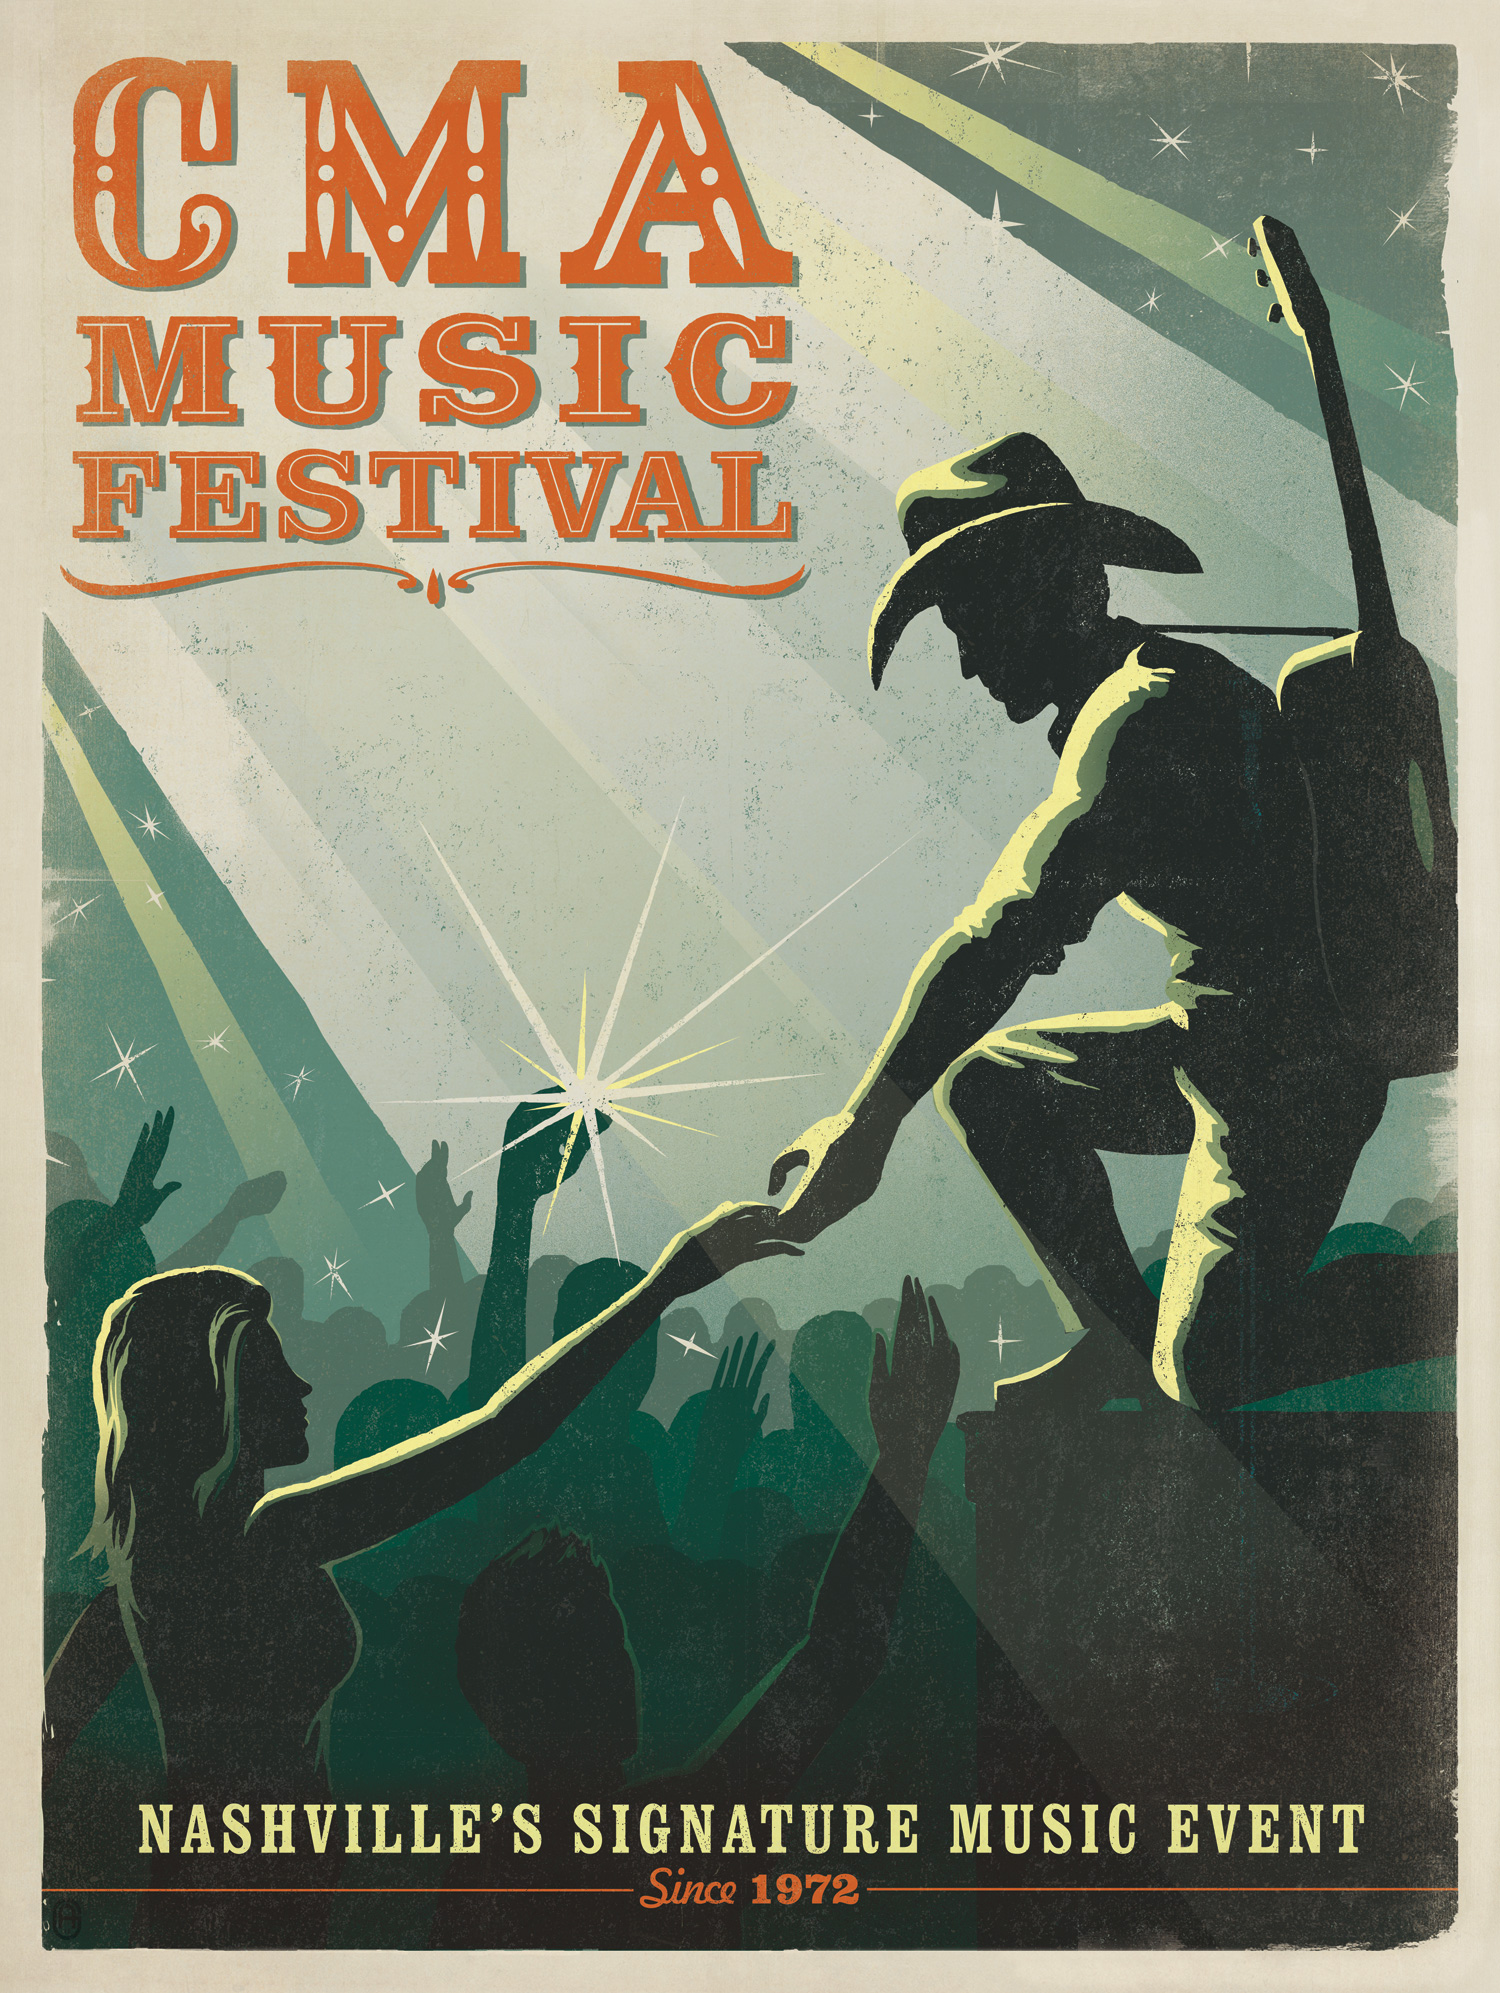 Spirit Of CMA Music Festival Captured In New Poster Sounds Like Nashville